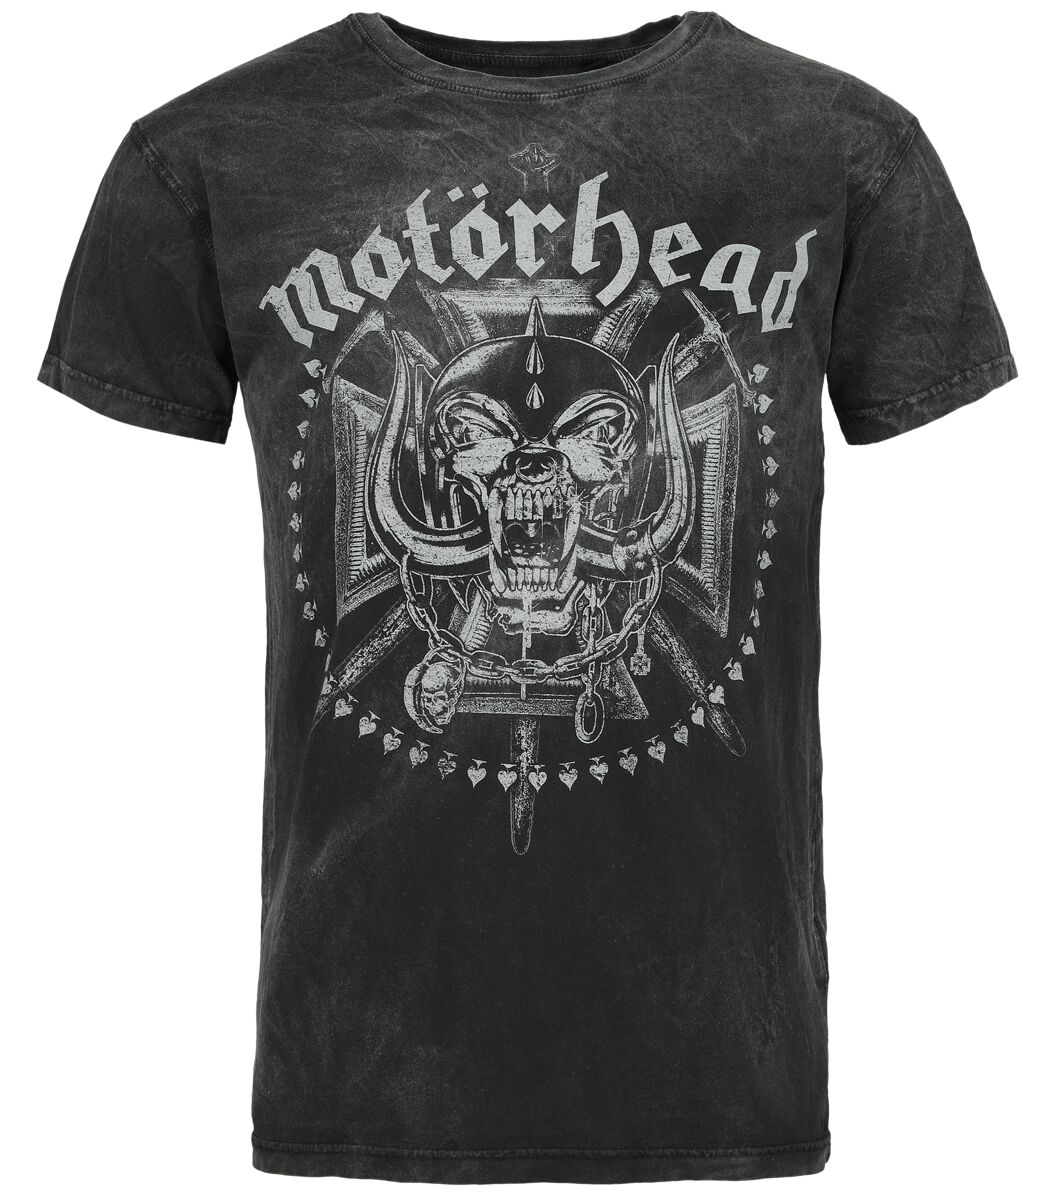 Motörhead T-Shirt - Iron Cross - S - für Männer - Größe S - anthrazit  - Lizenziertes Merchandise!